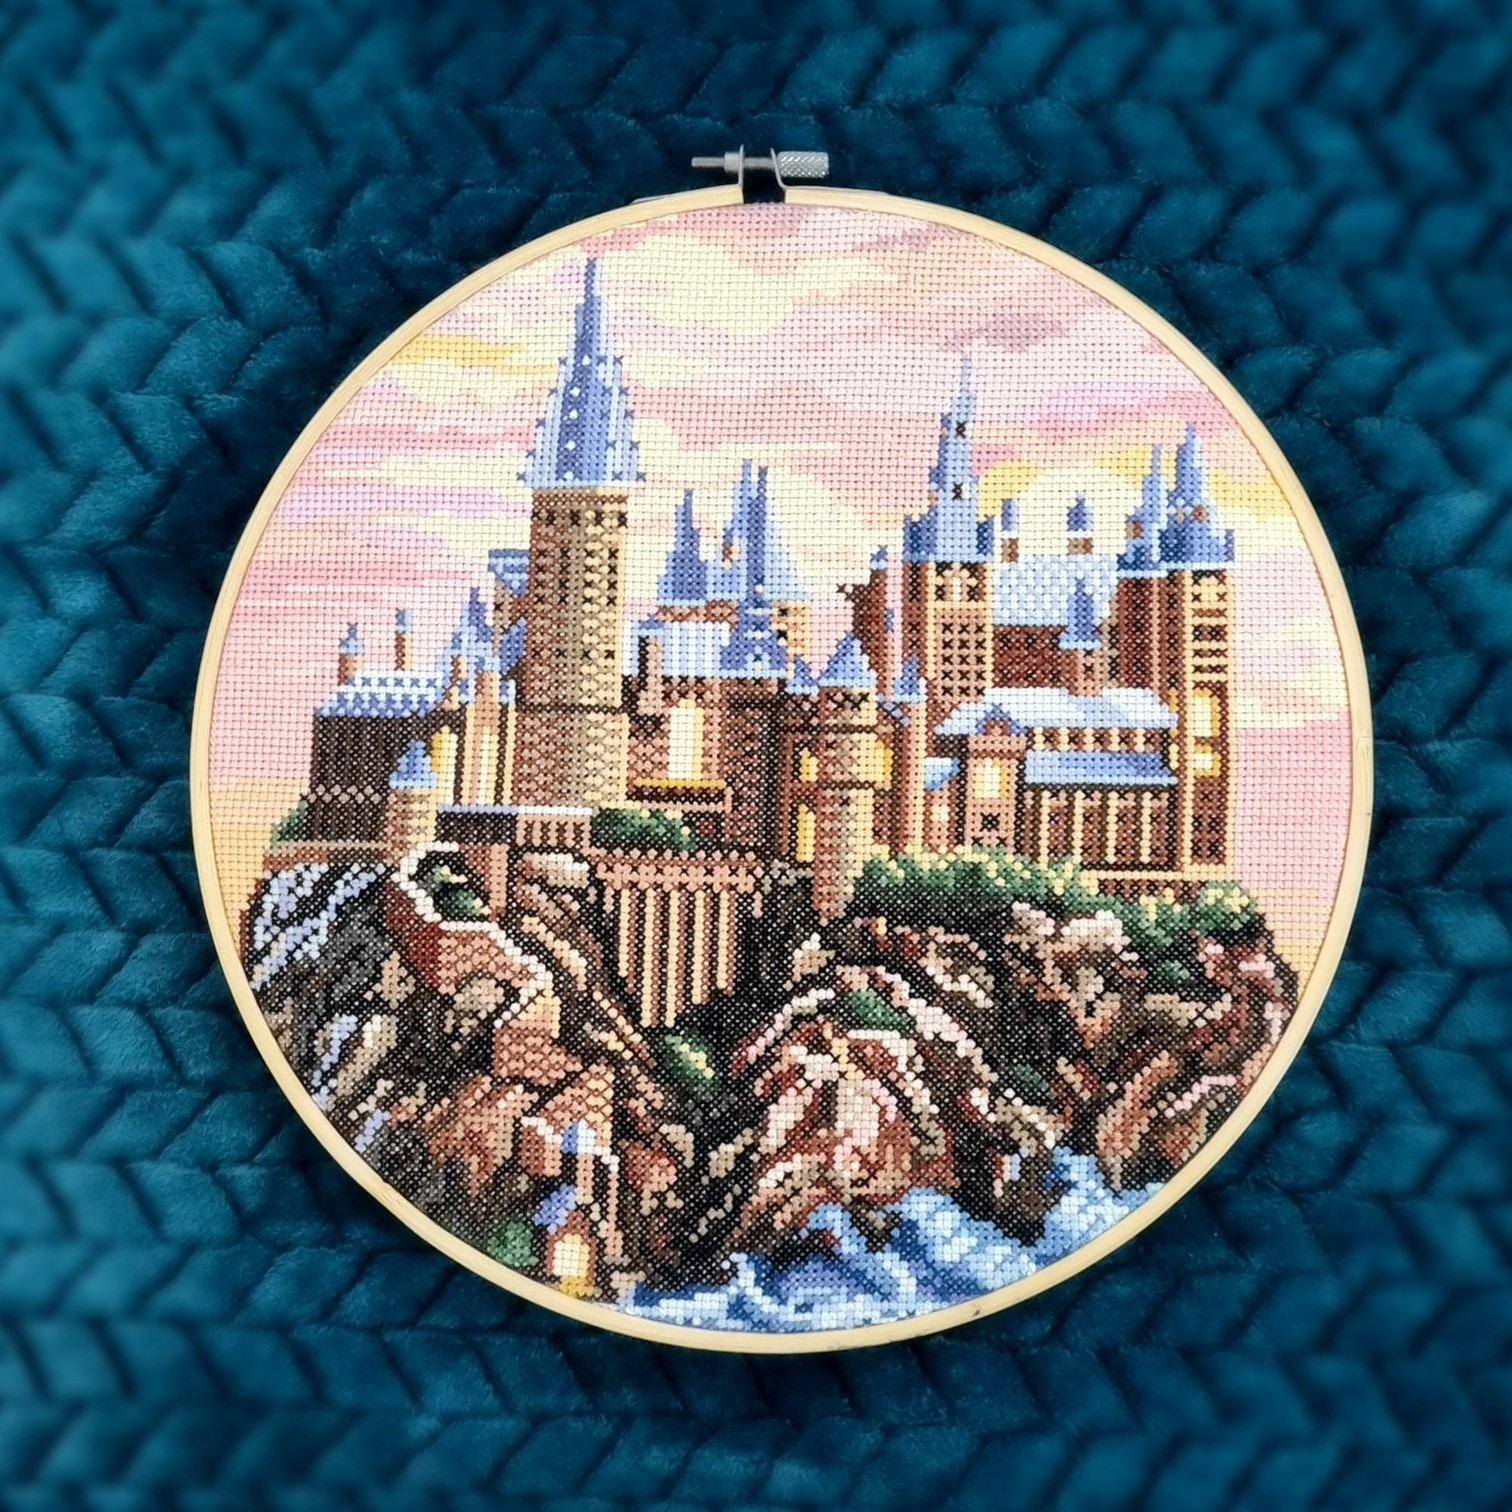 Hogwarts castle cross stitch pattern PDF by Smasterilli